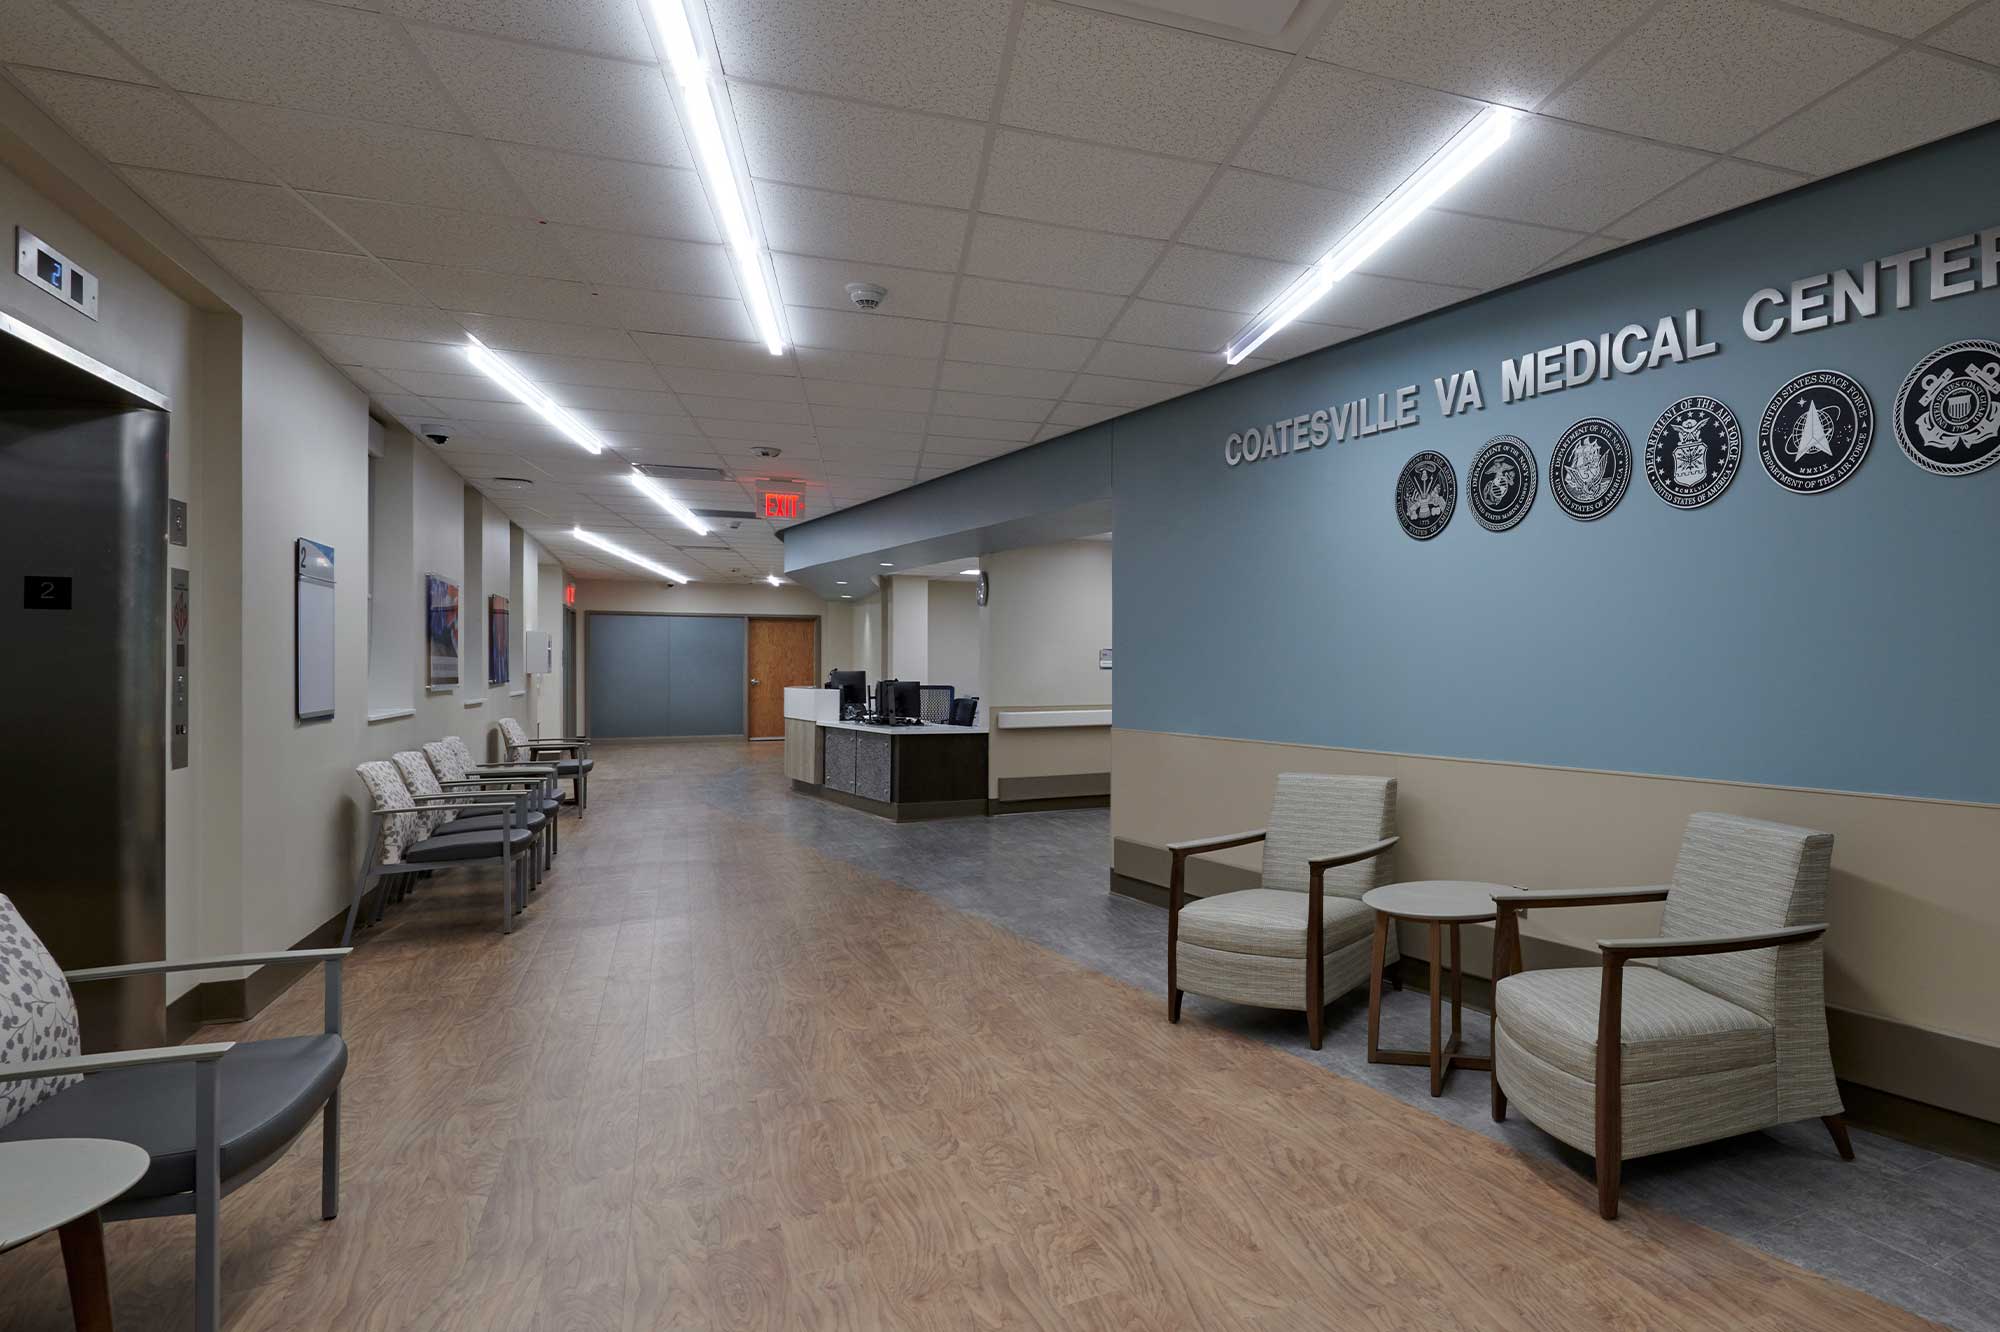 Coatesville VA Medical Center Interior Waiting Room Area